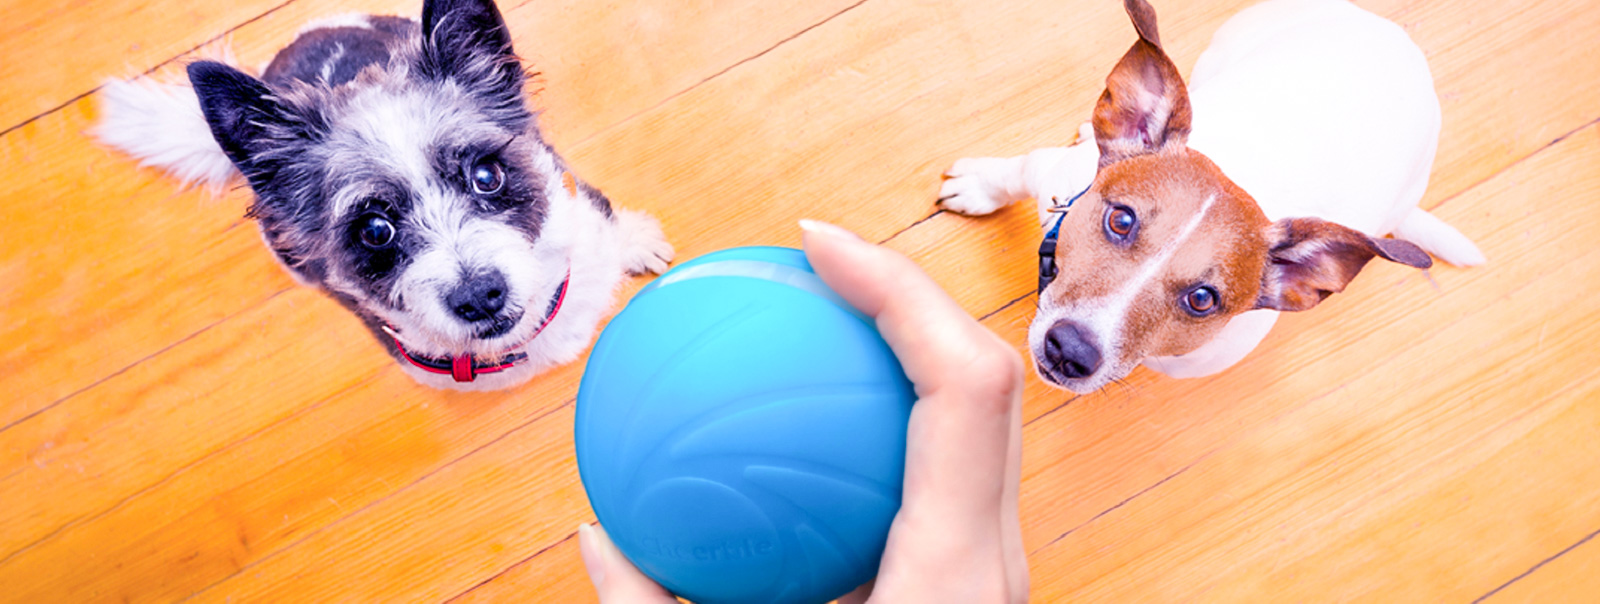 Wicked Ball - автоматизированный мячик для домашних животных